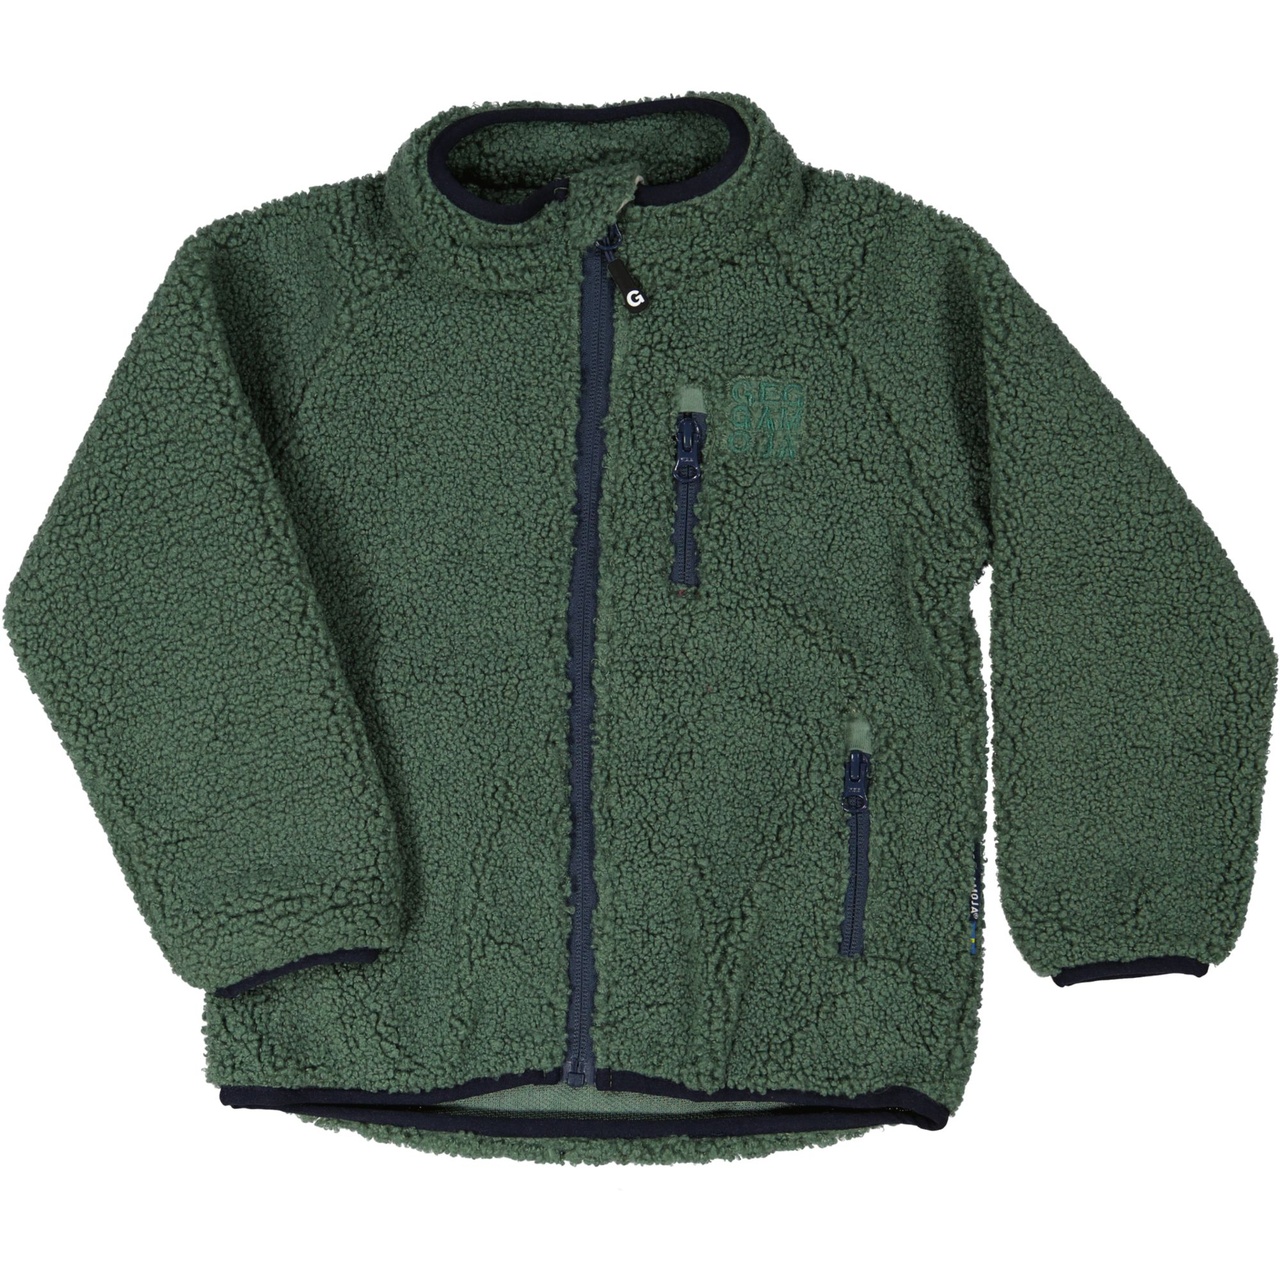 Pile teen jacket Moss green  170